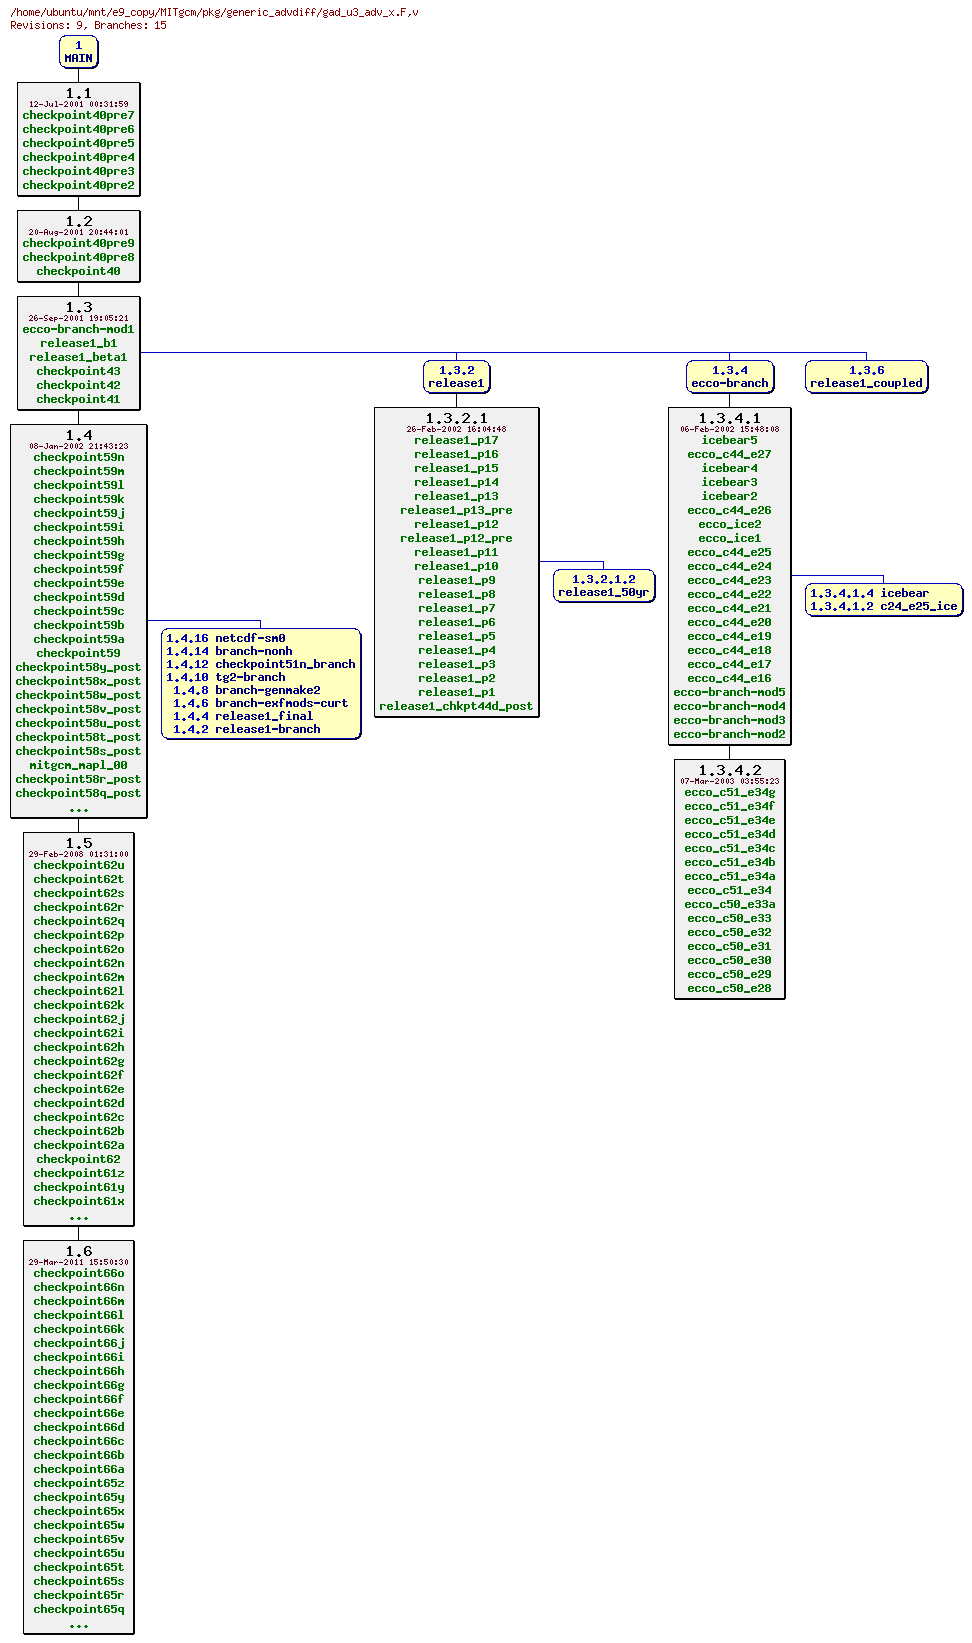 Revisions of MITgcm/pkg/generic_advdiff/gad_u3_adv_x.F